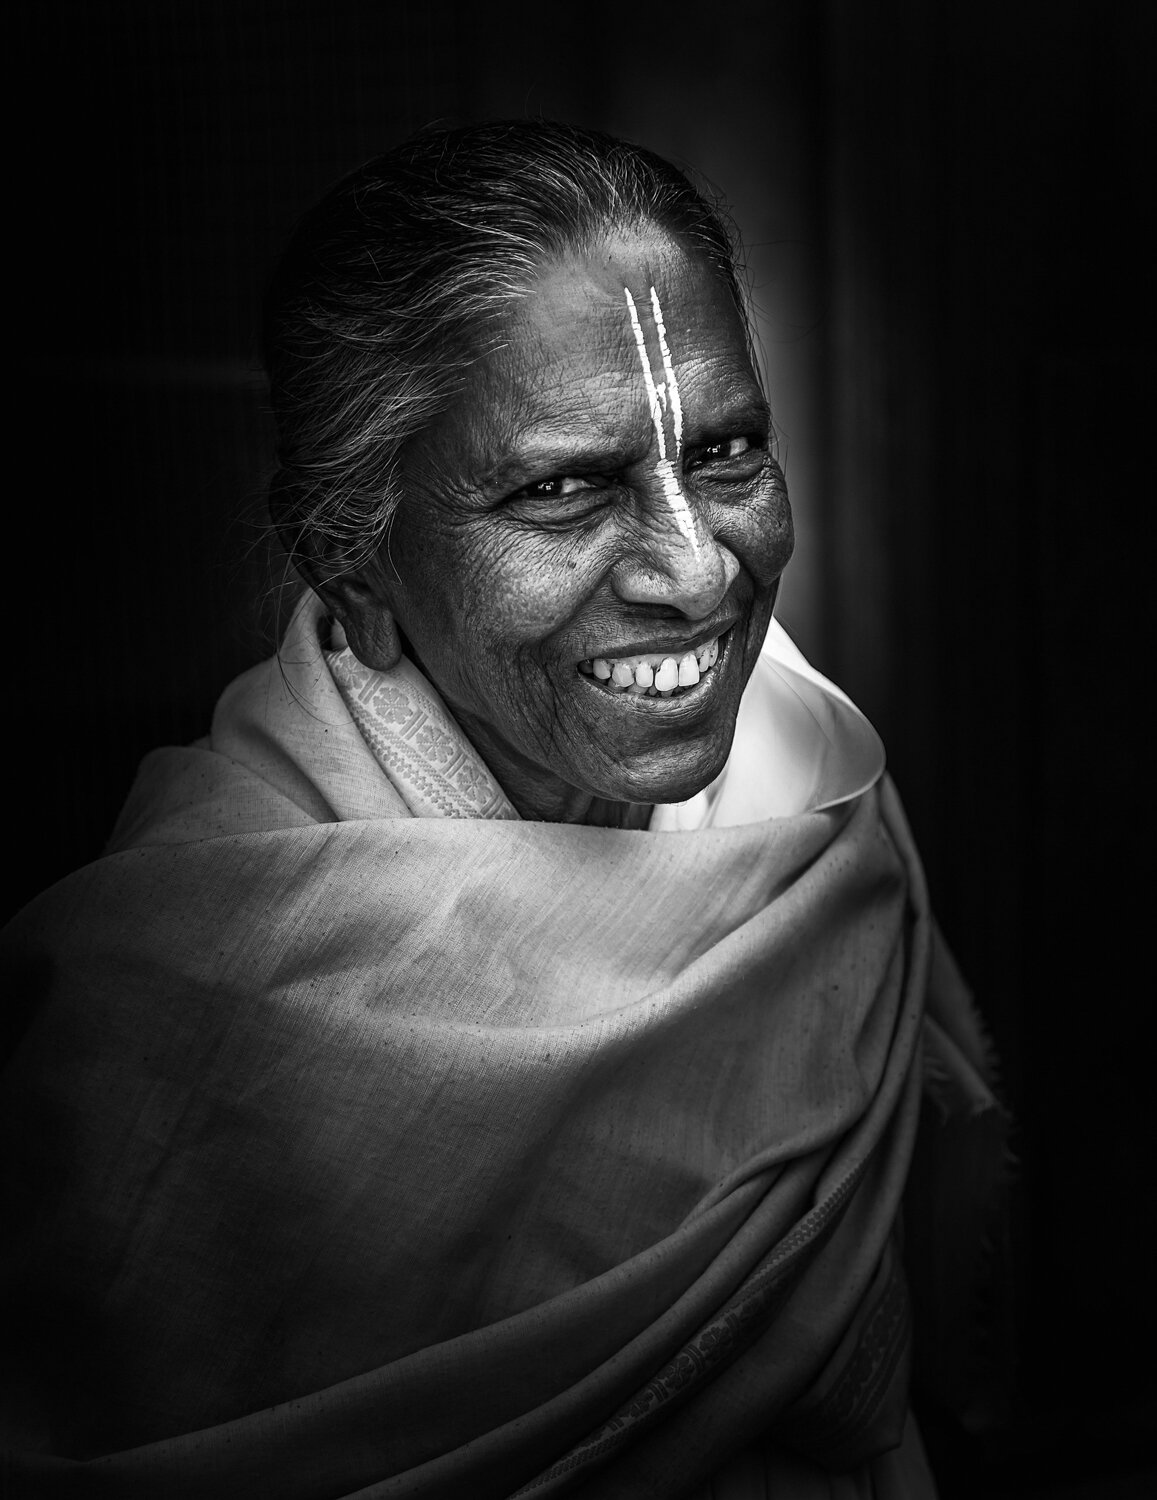 smiling widow of vrindavan by prathamesh dixit.jpg